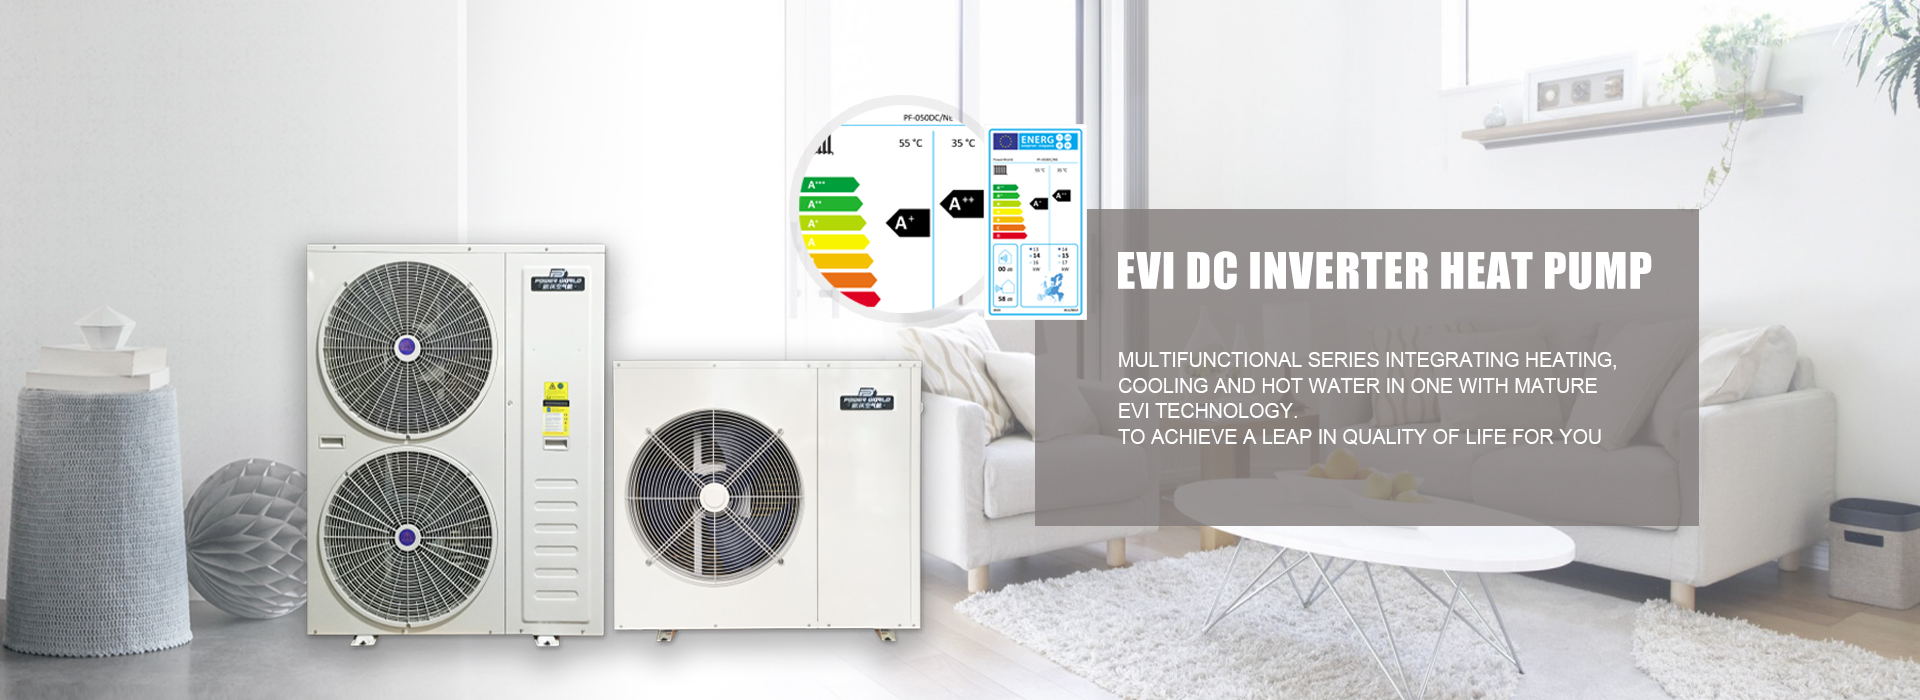 R410a EVI DC Inverter heat pump